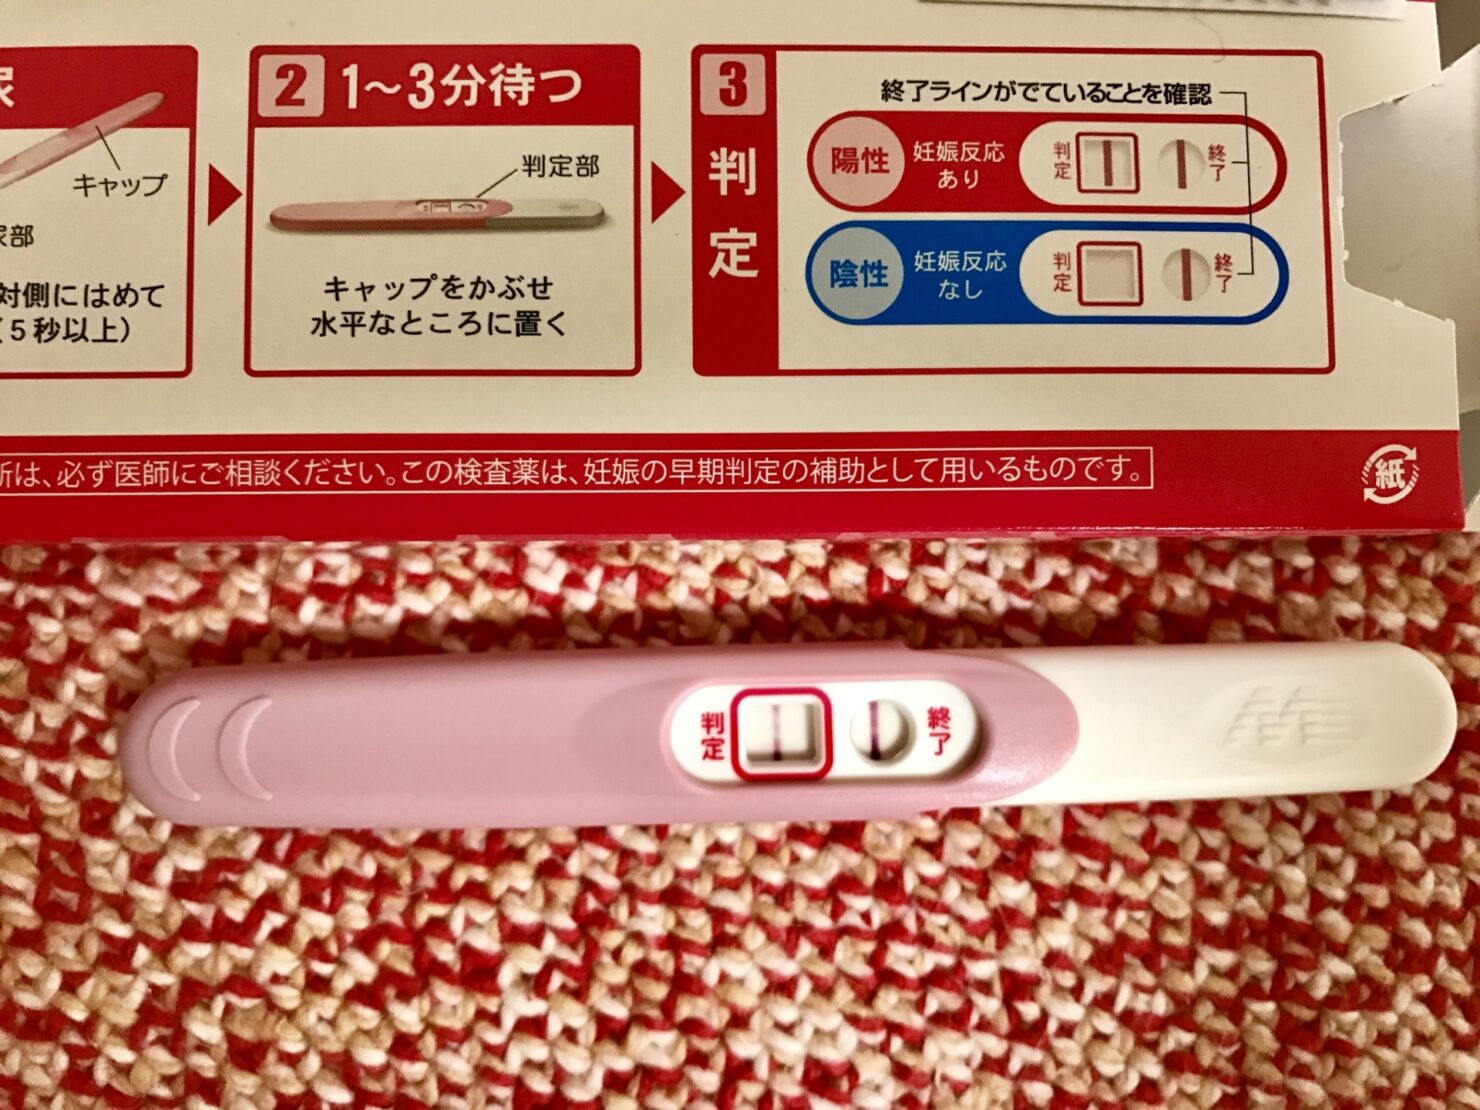 妊娠 検査 薬 終了 線 の あと に 陽性